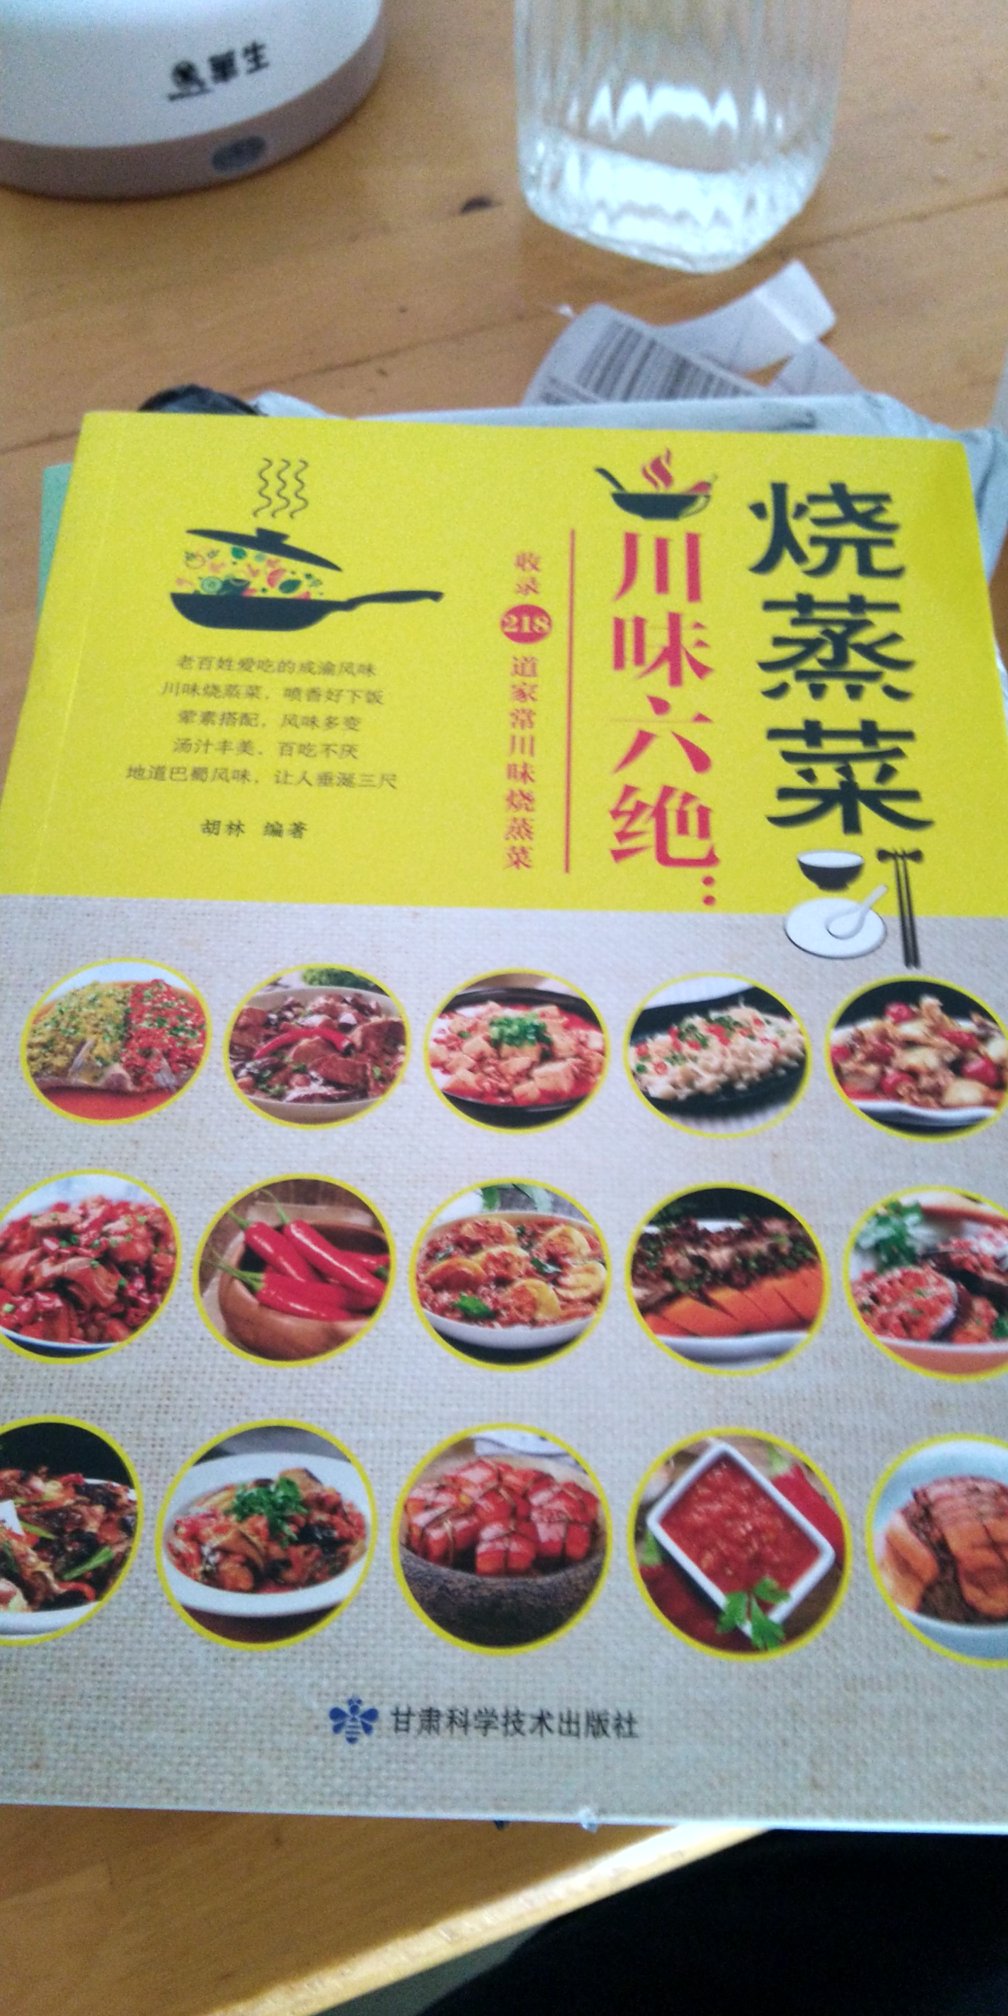 川菜菜谱，不错的开始，慢慢学习做菜